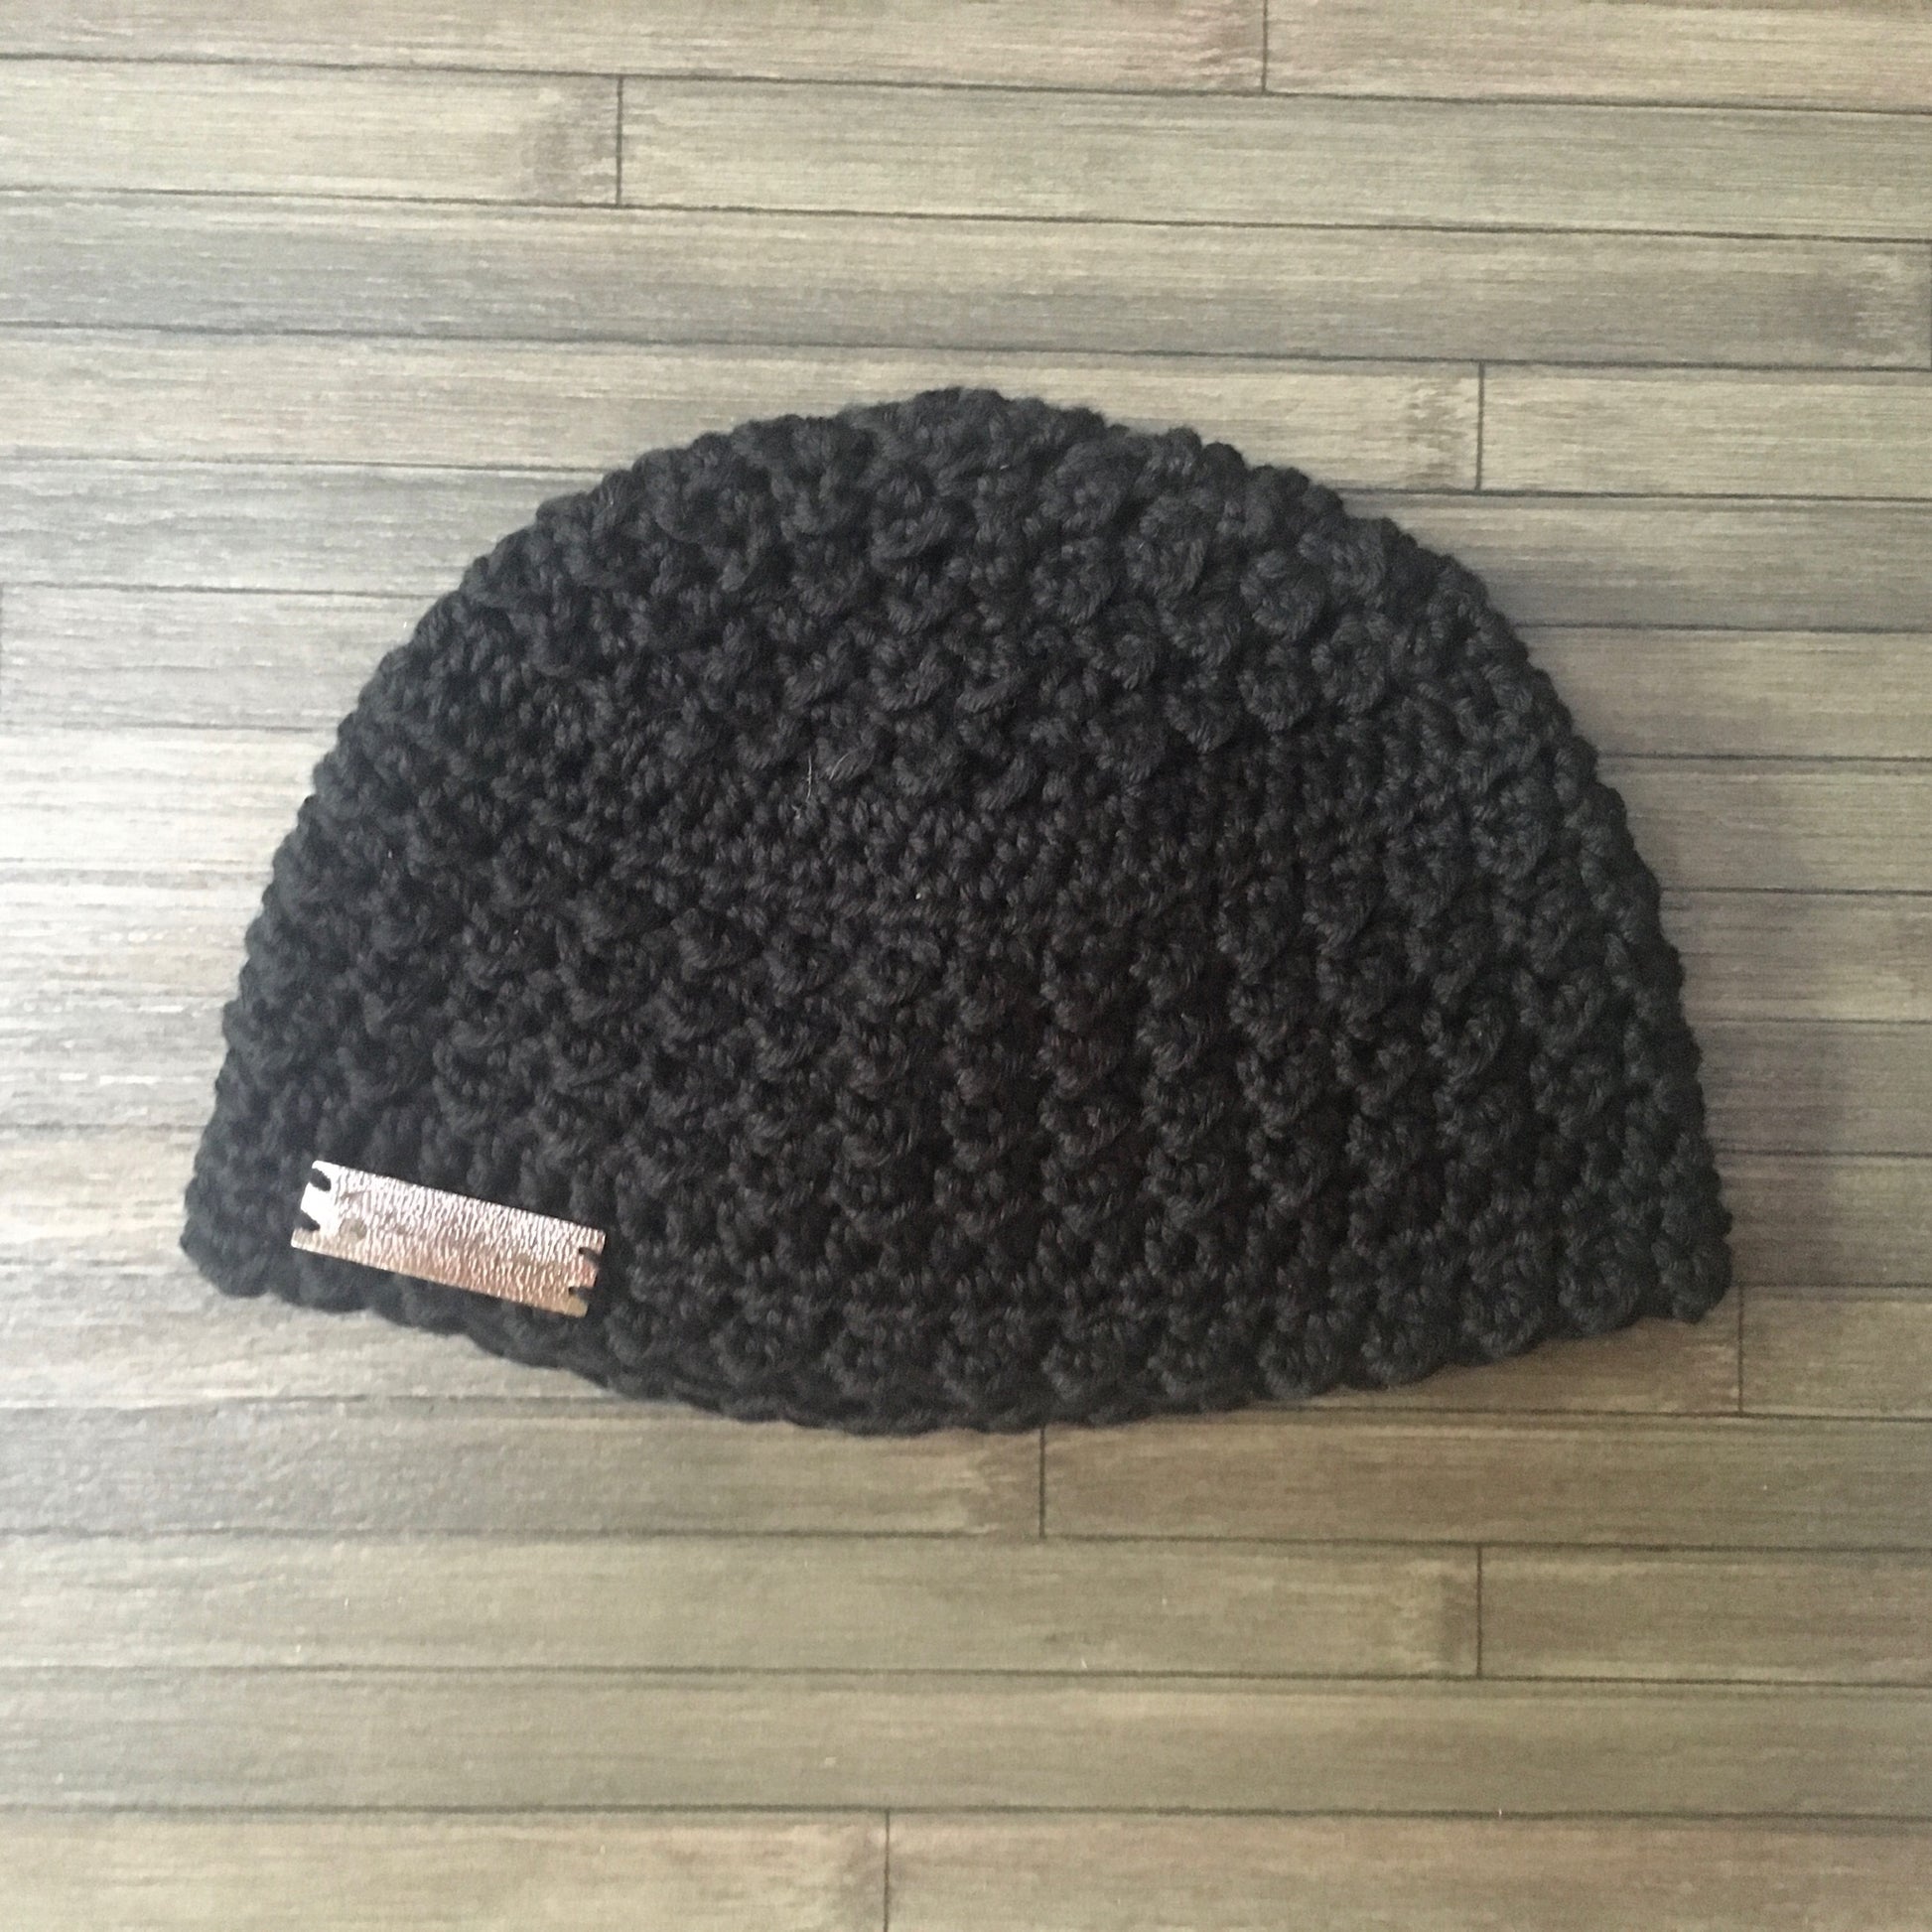 Celtic Weave Hat Crochet Pattern, Cabled Crochet Hat, Instant